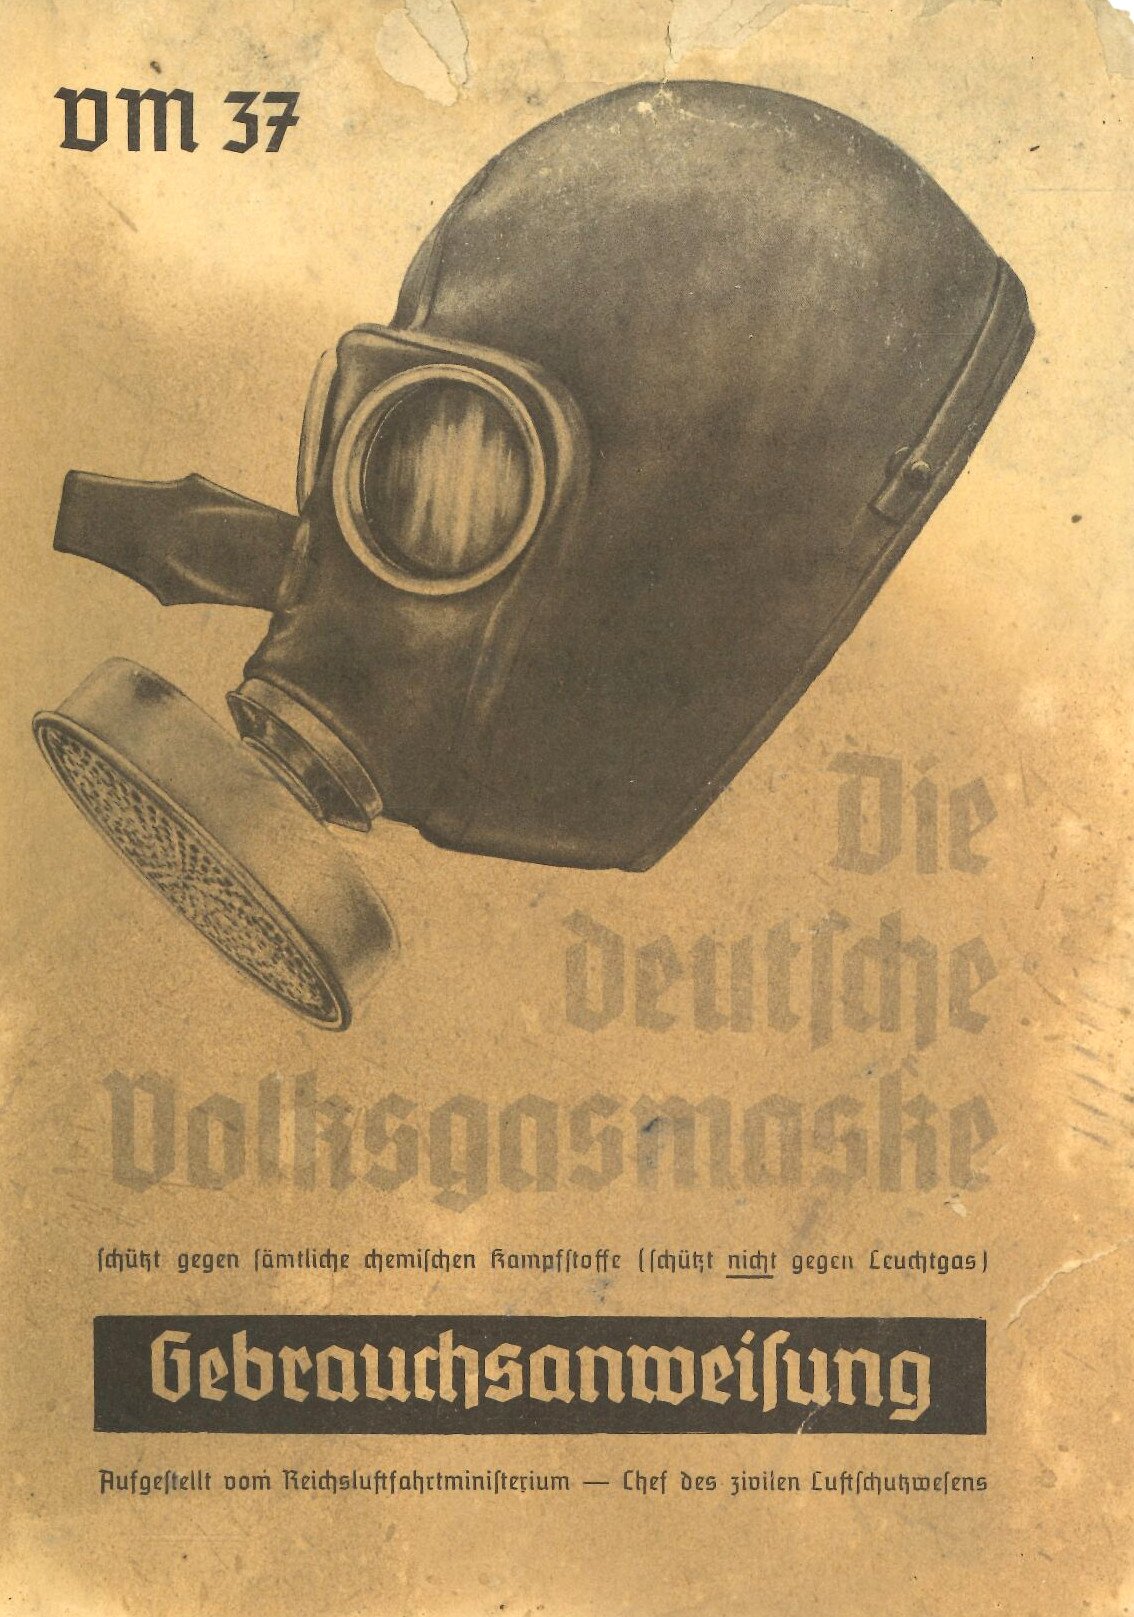 Die Volksgasmaske - Gebrauchsanweisung (Feuerwehrmuseum Grethen CC BY-NC-SA)